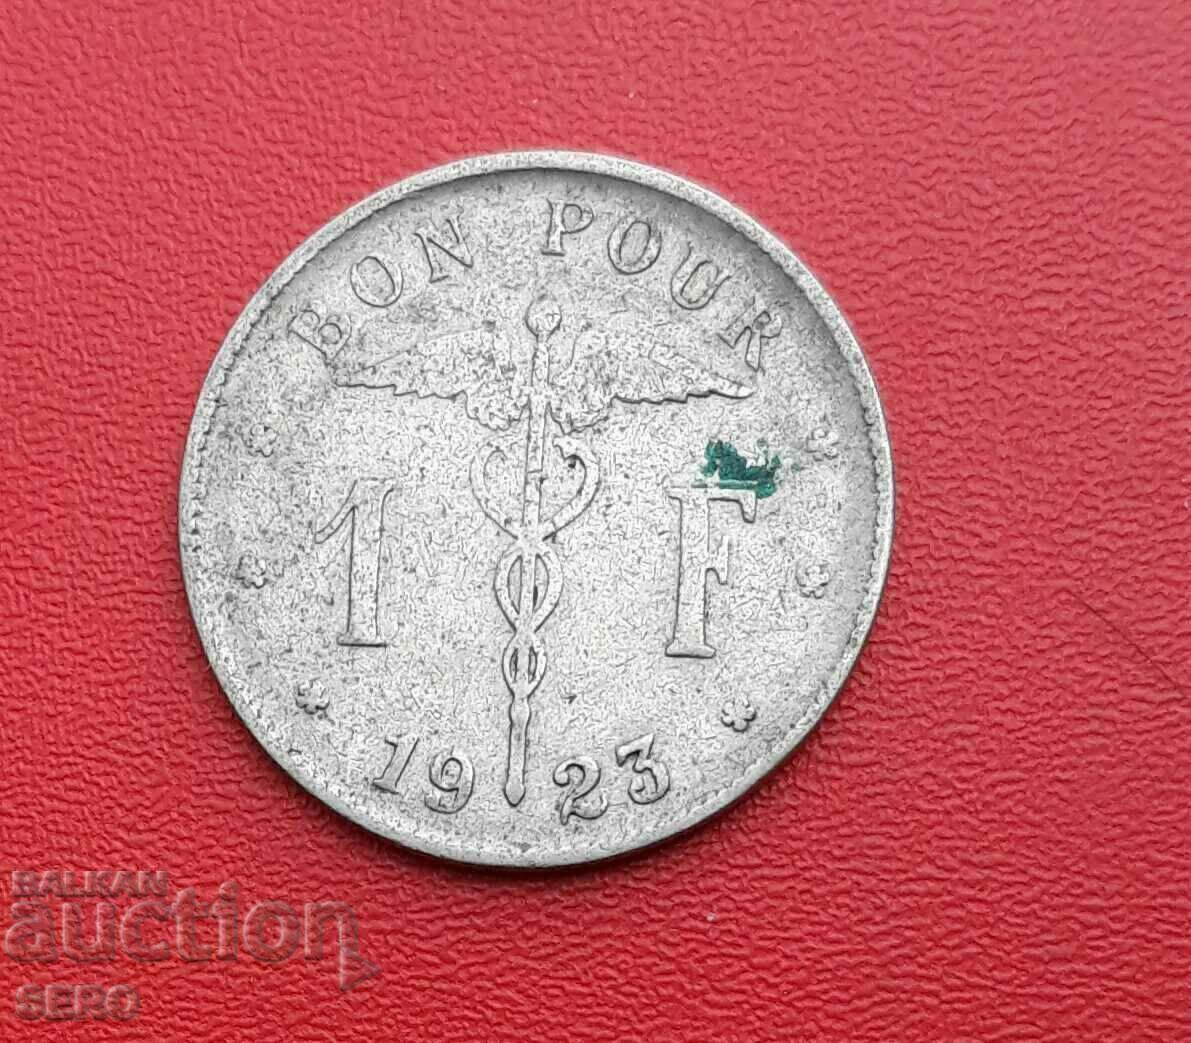 Belgia - 1 franc 1923